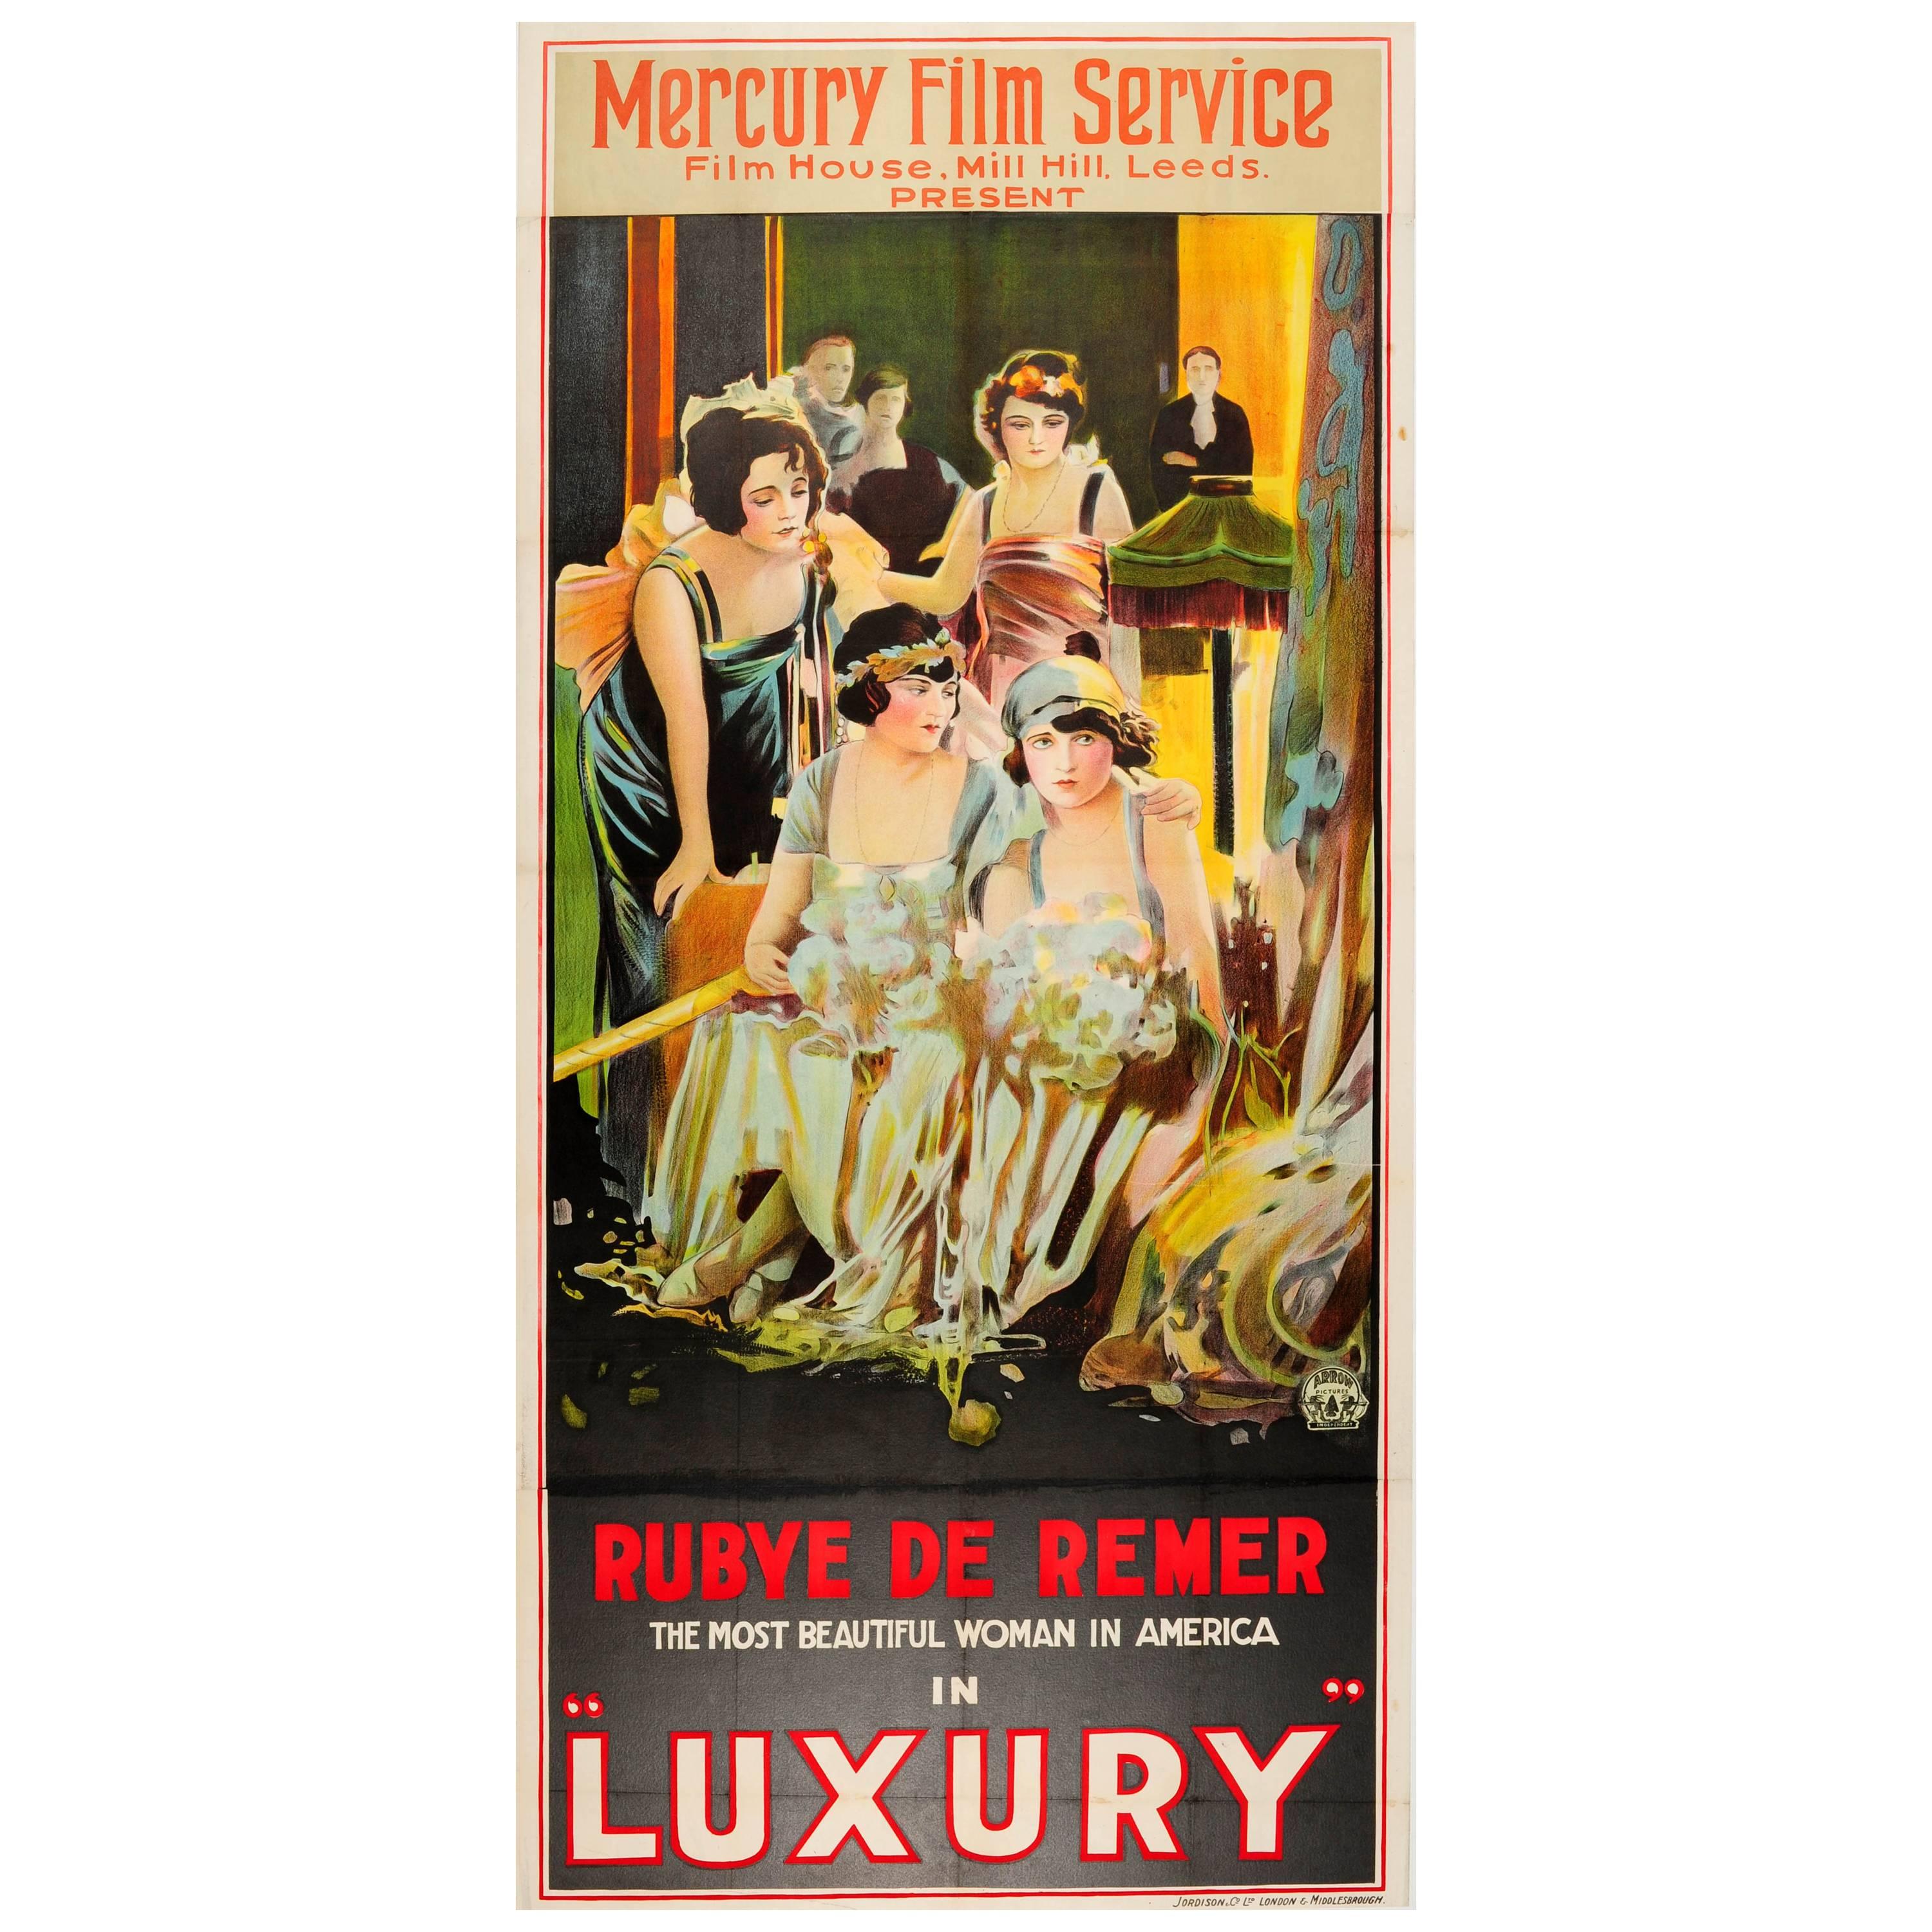 Großes Original Vintage Filmplakat für den Film Luxury mit Rubye De Remer in der Hauptrolle